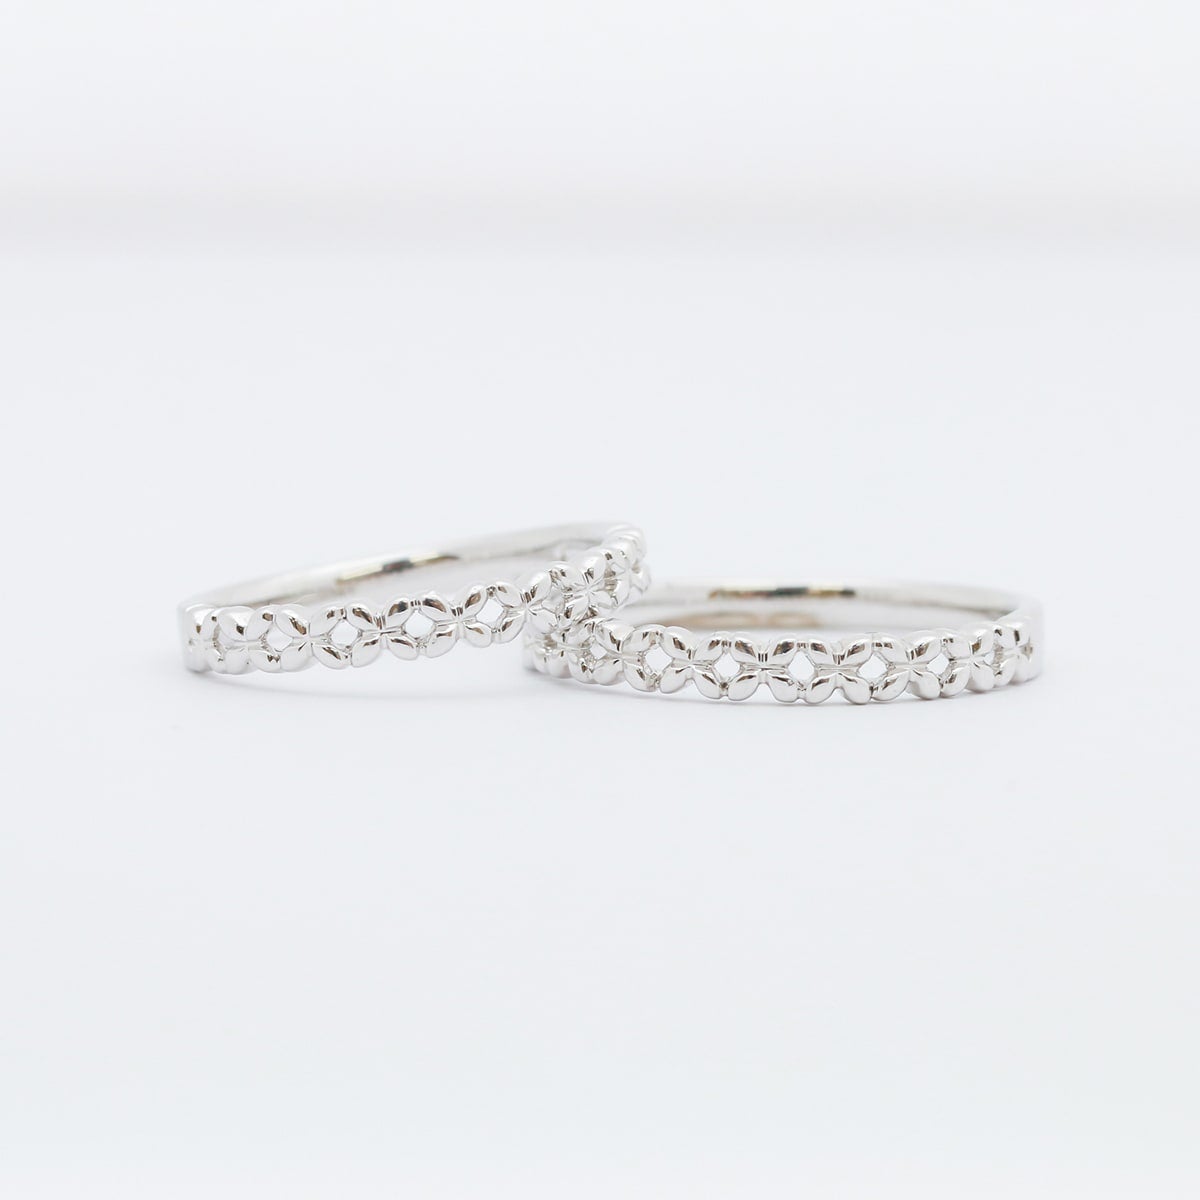 結婚指輪 2本セット | 14702-14701